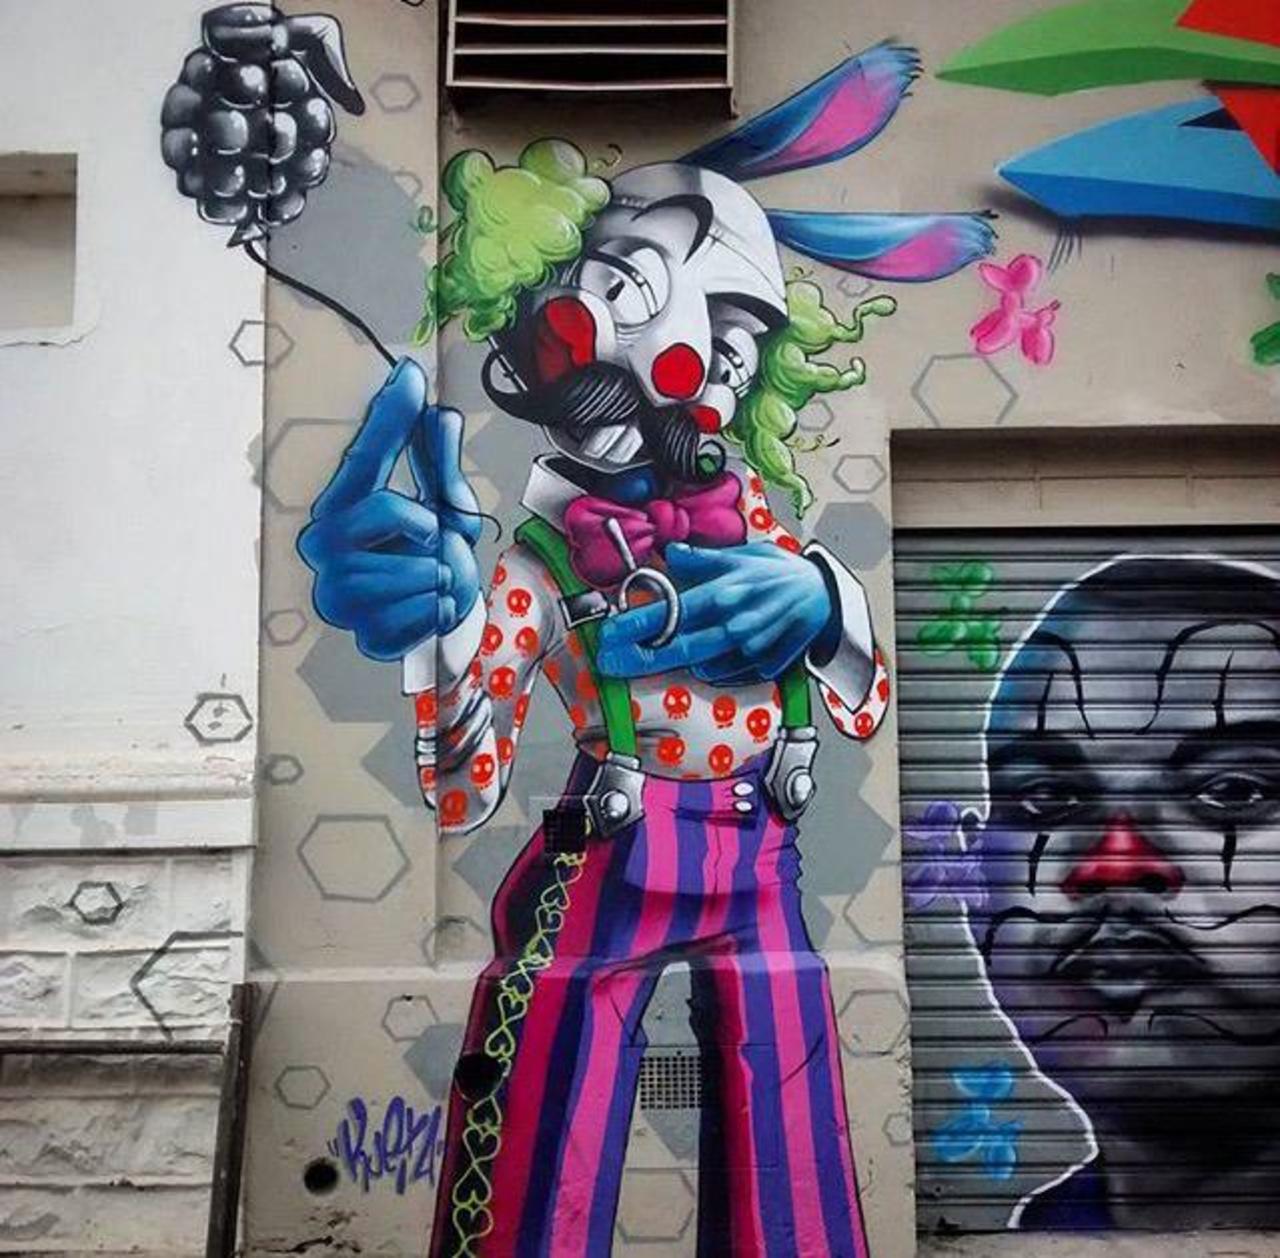 New Street Art by Karen Kueia 

#art #graffiti #mural #streetart http://t.co/yp3iYLSpj9